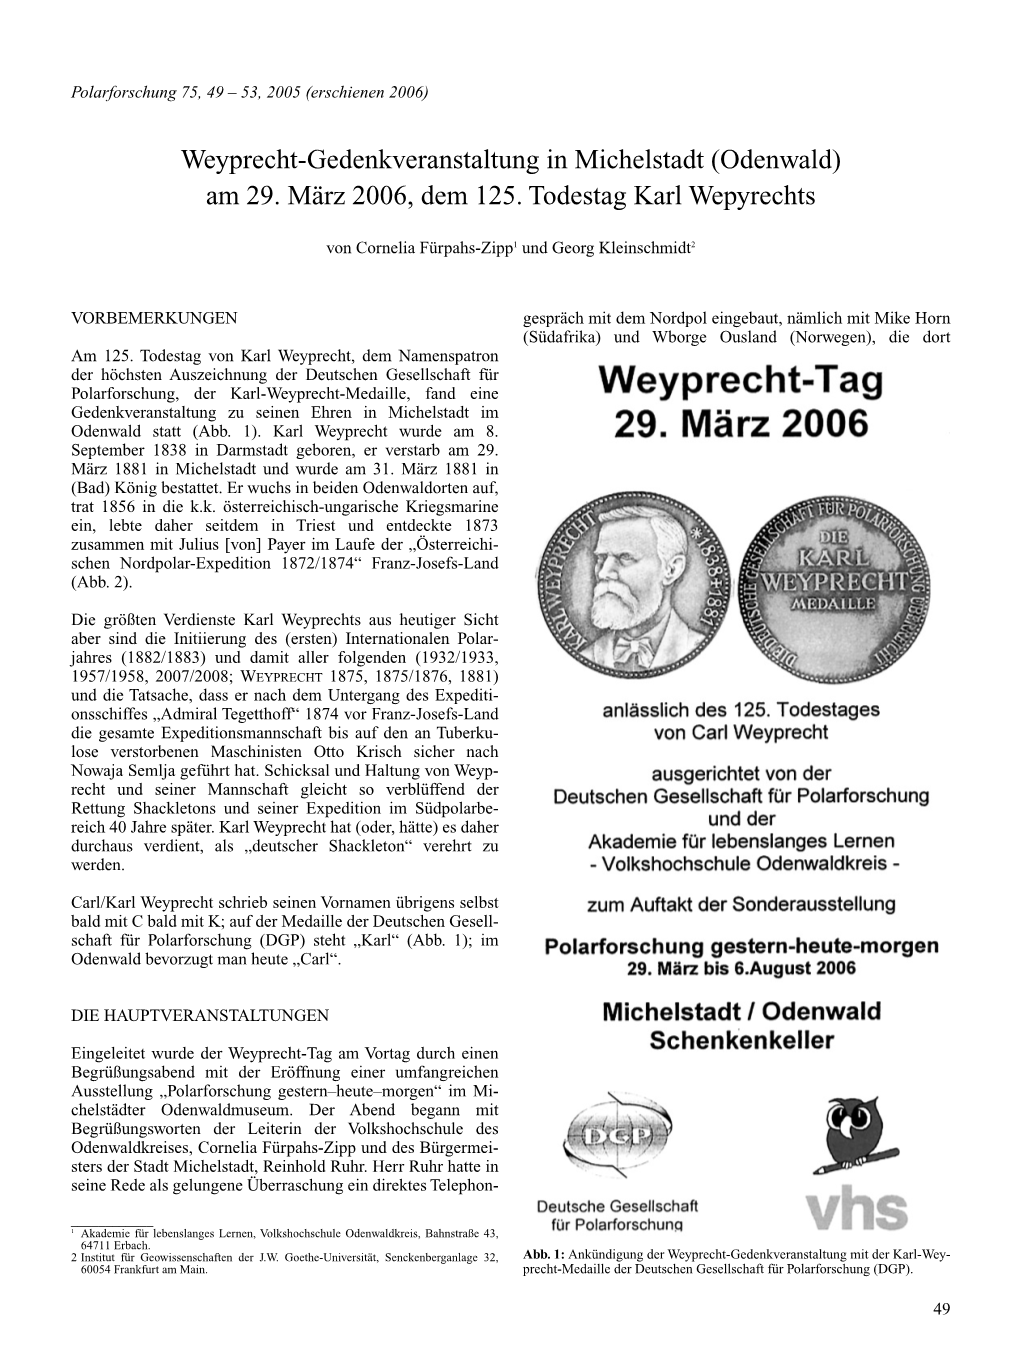 Weyprecht-Gedenkveranstaltung in Michelstadt (Odenwald) Am 29. März 2006, Dem 125. Todestag Karl Wepyrechts